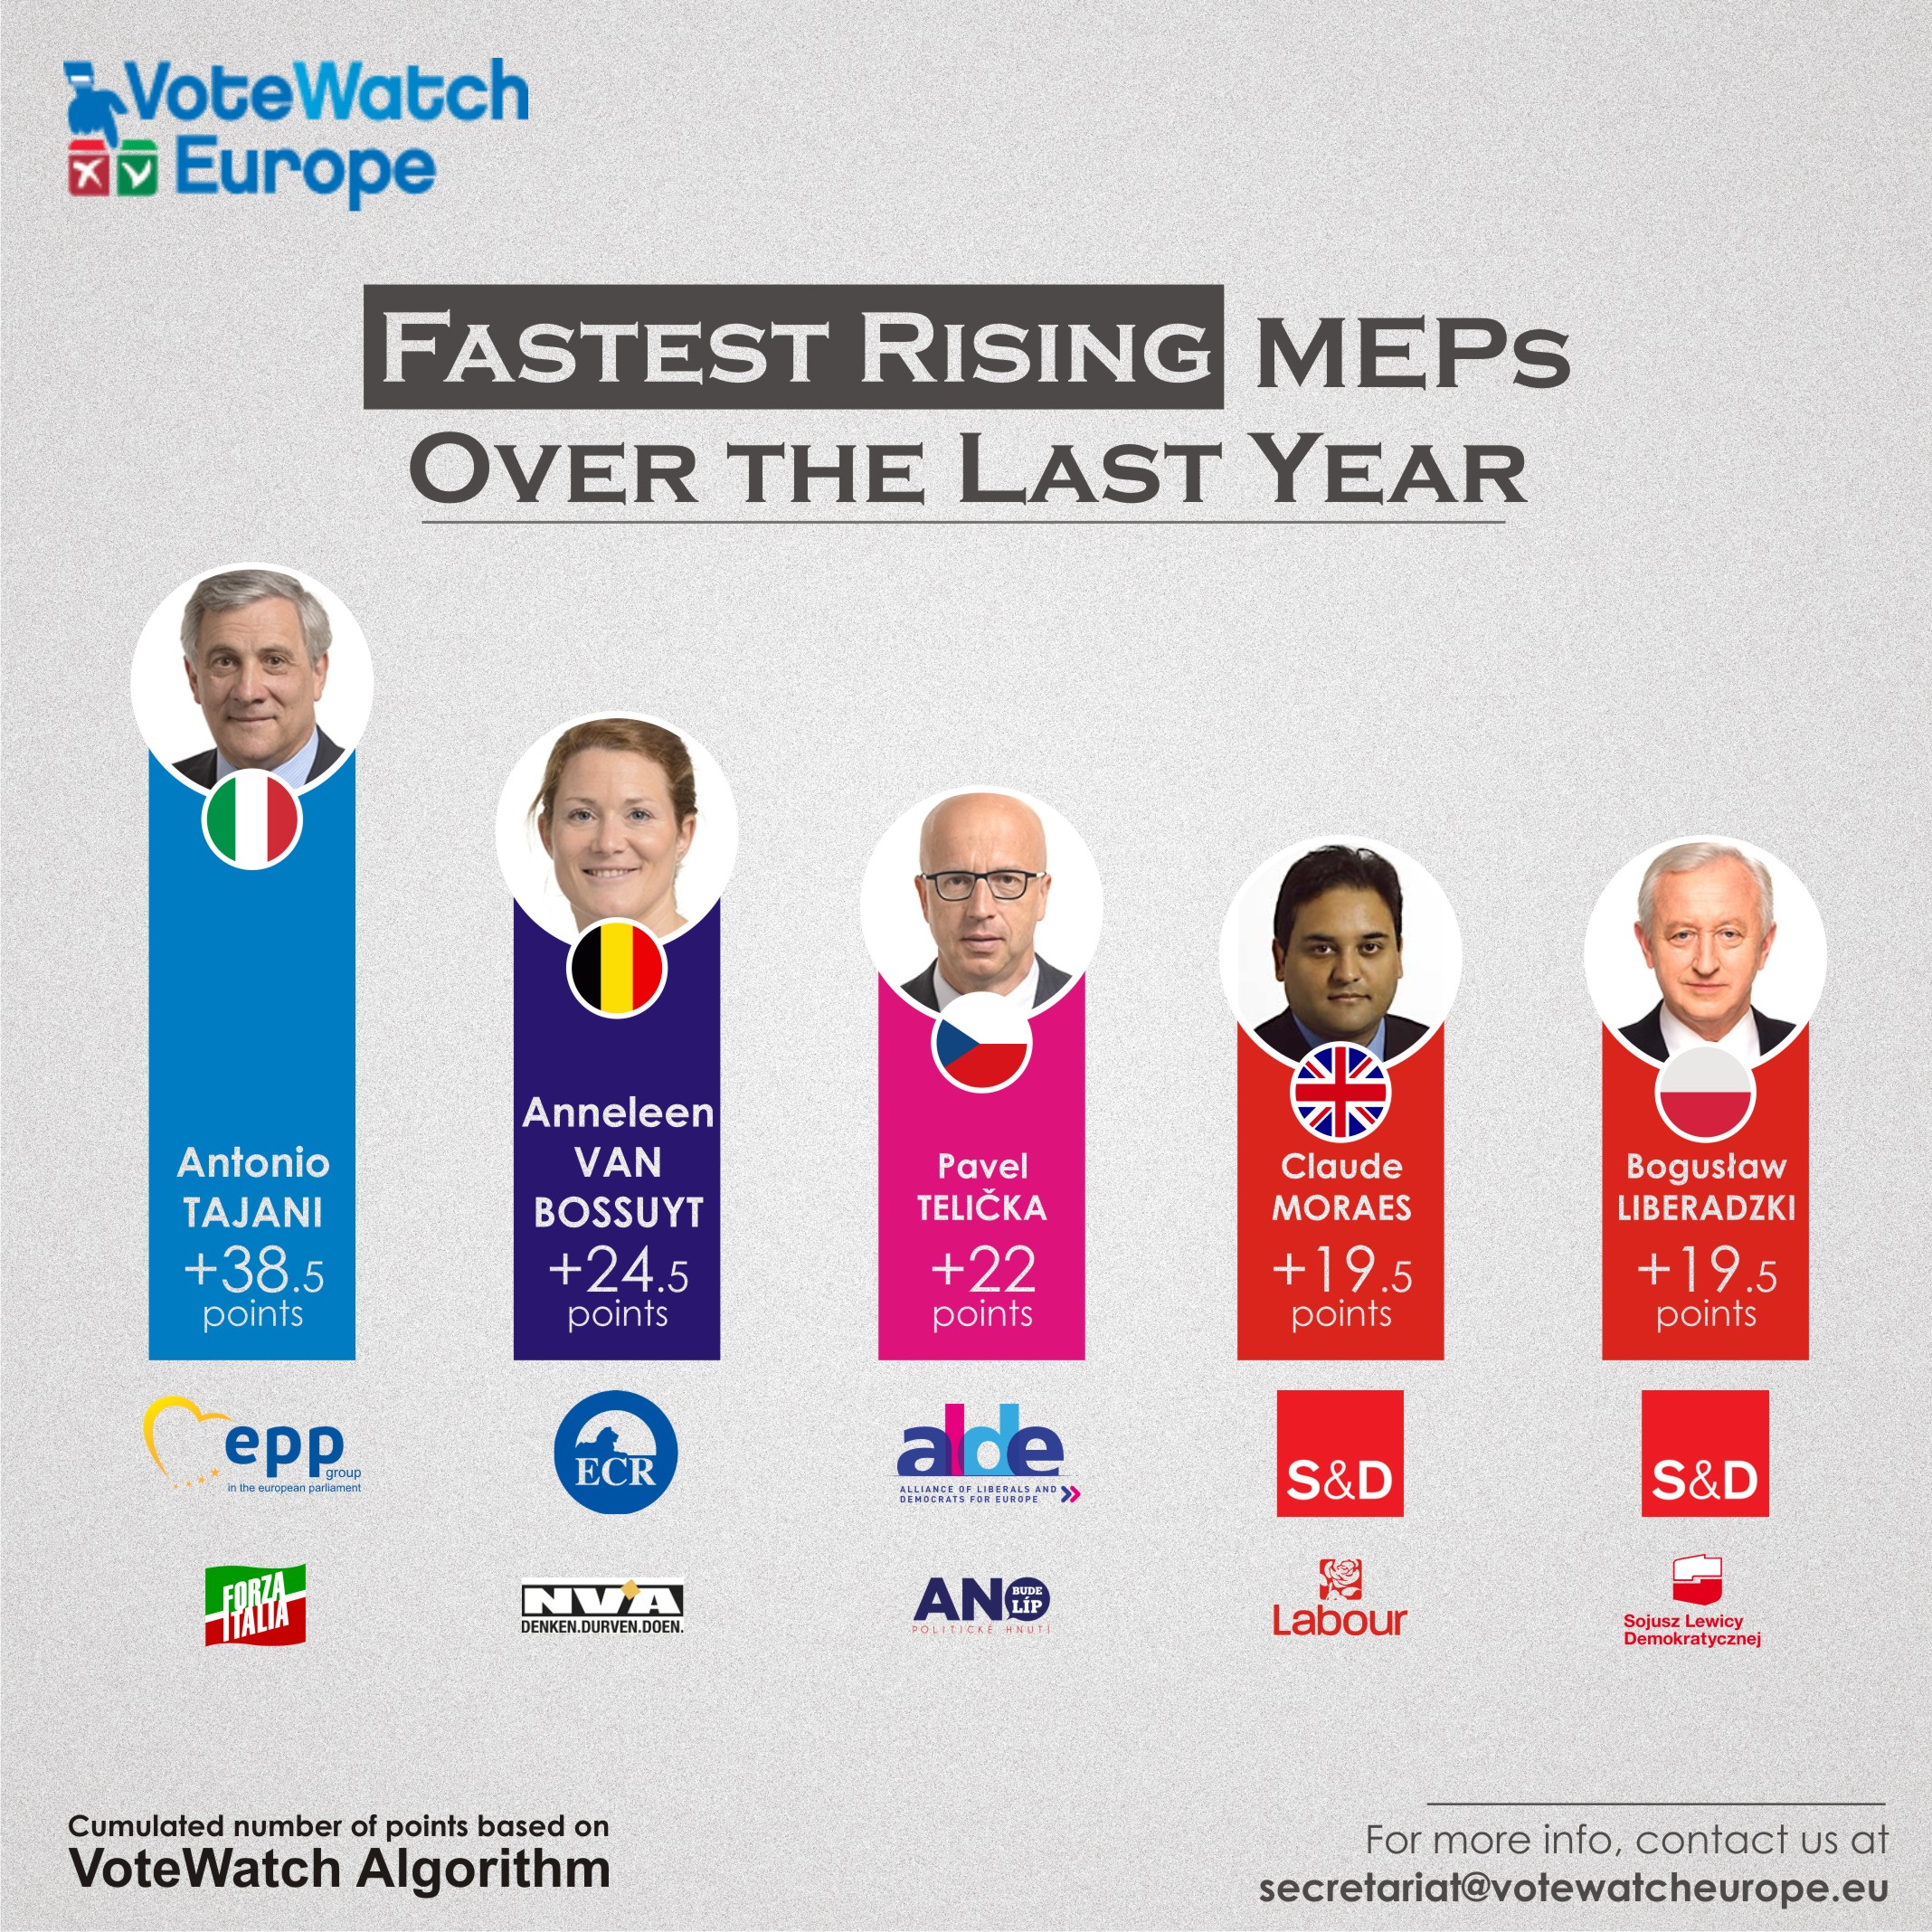 PJvw62 MEPs 2017 fastest